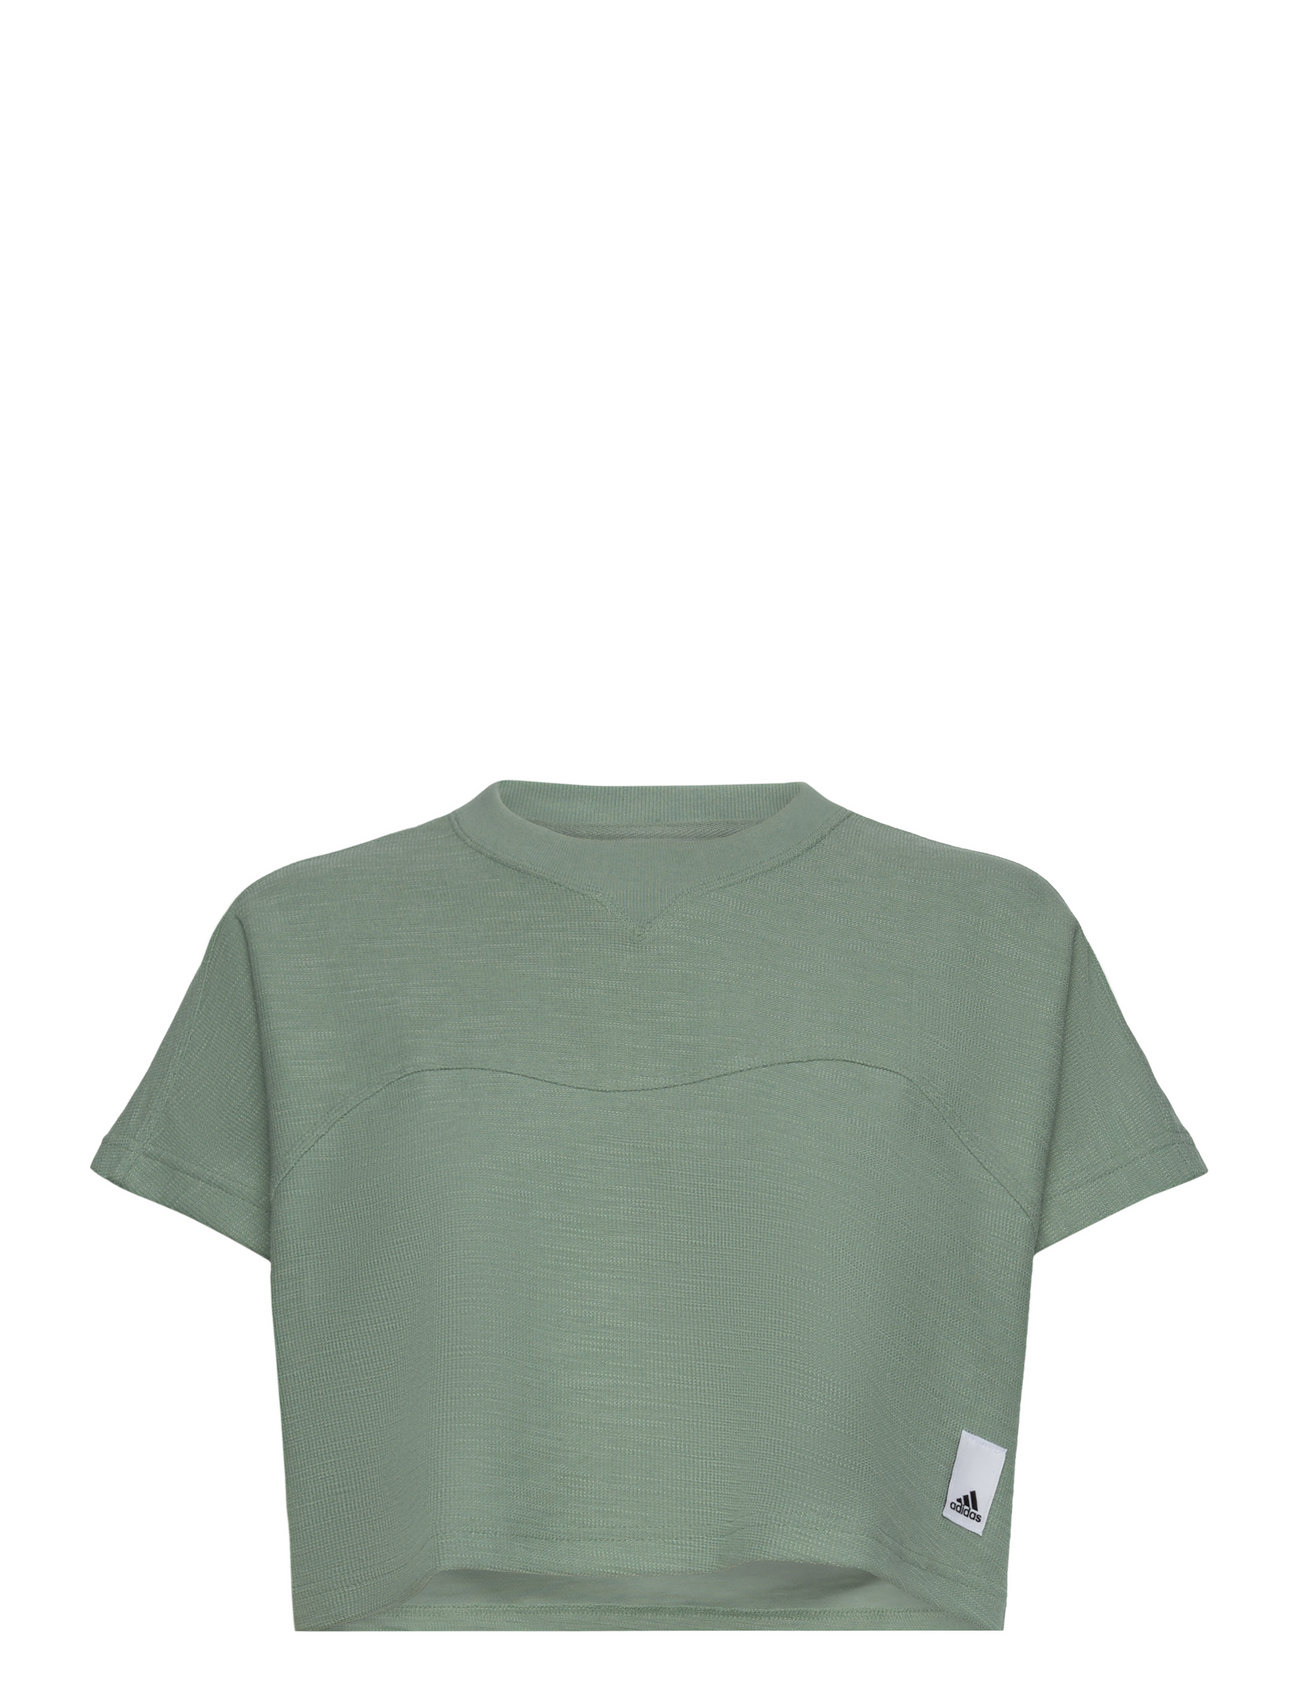 Lounge Terry Loop Crop Top Sport Crop Tops Short-sleeved Crop Tops Green Adidas Sportswear